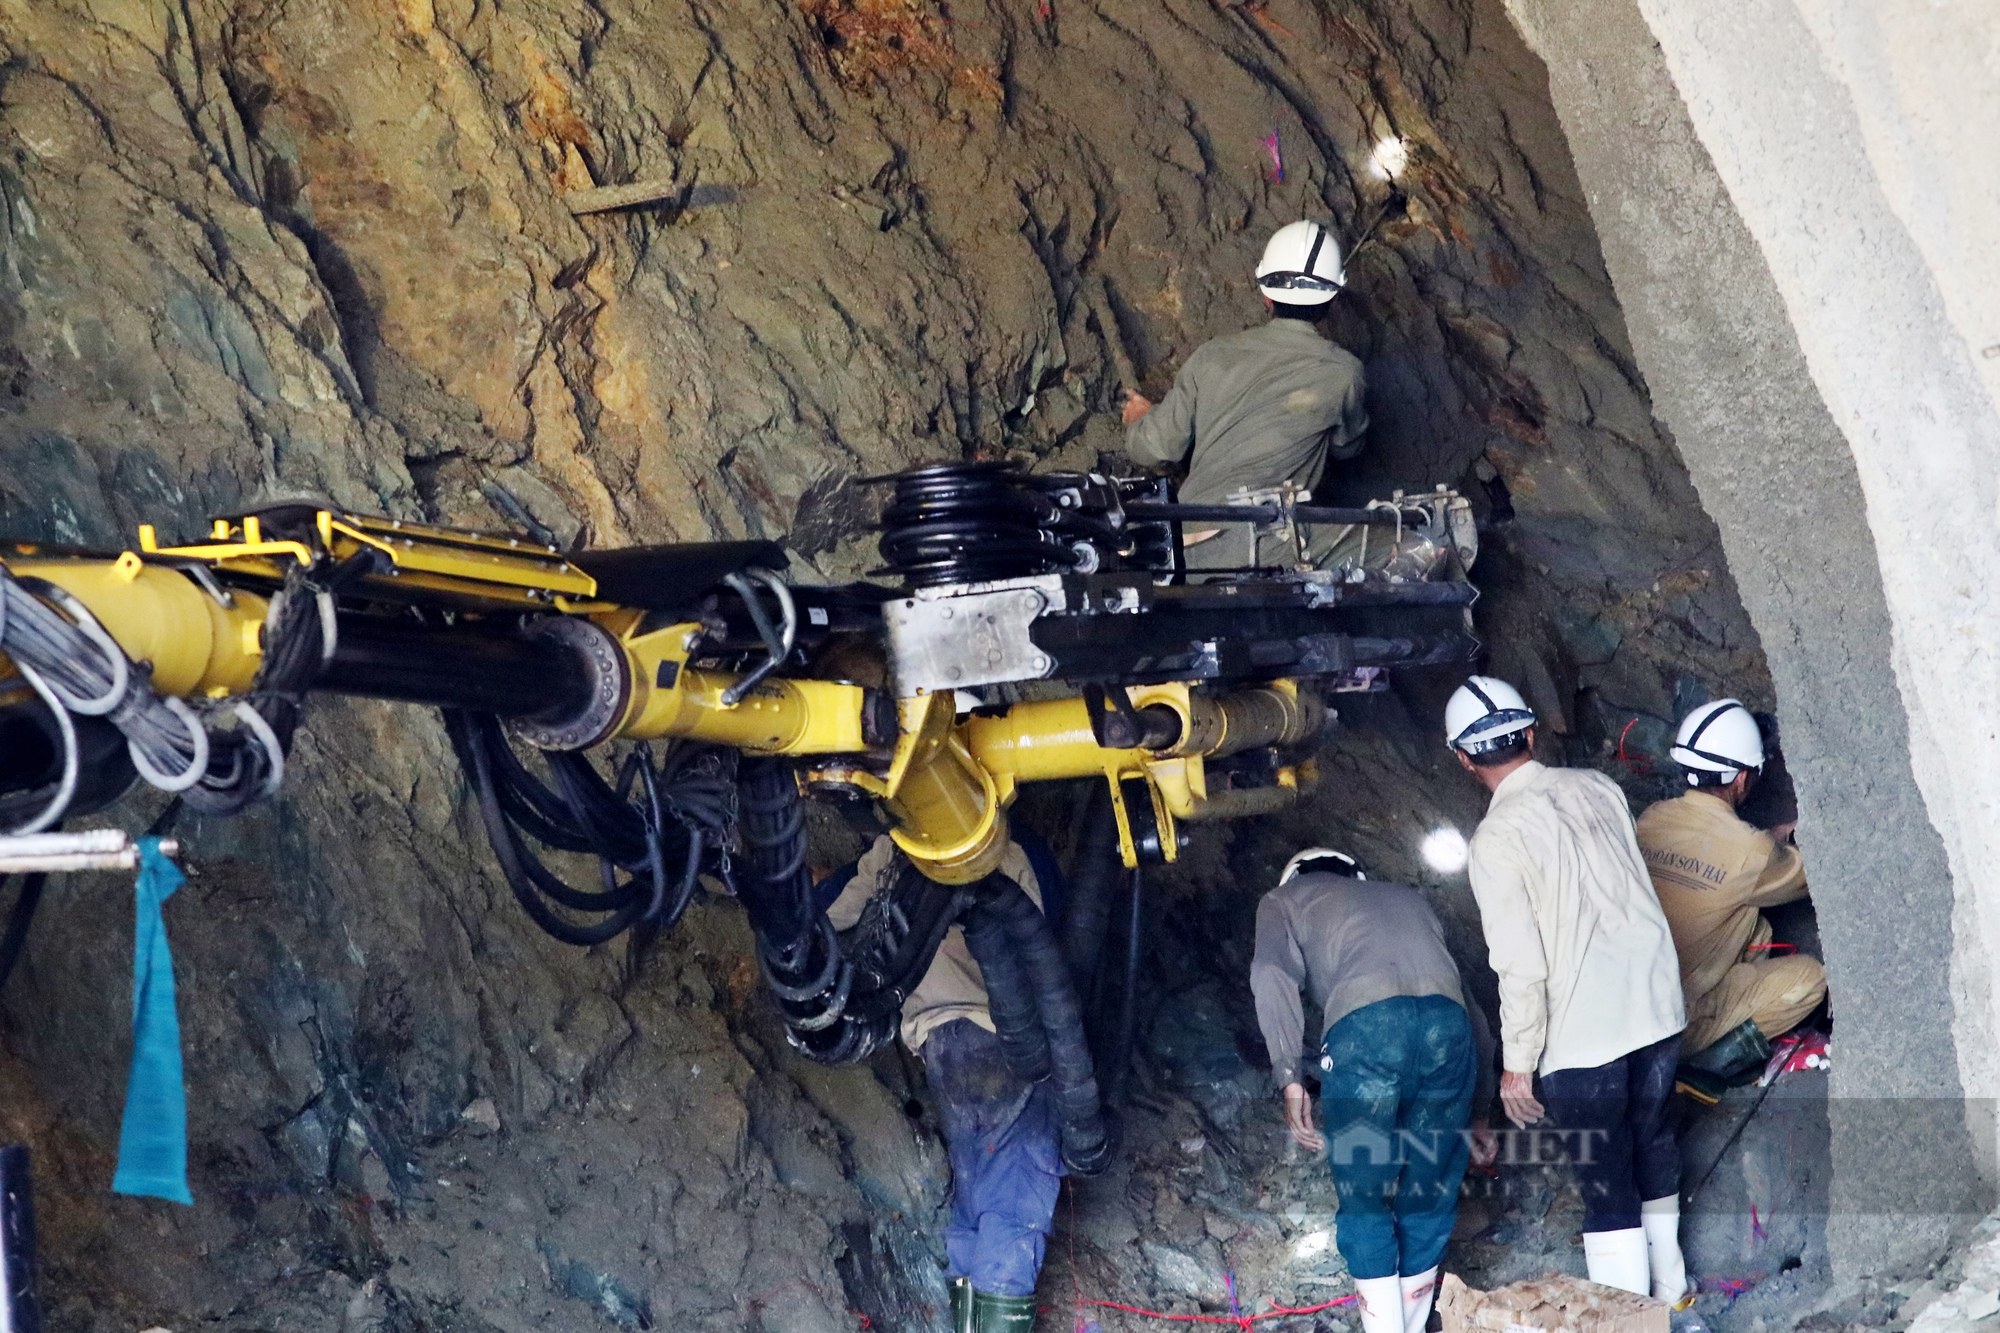 Hà Tĩnh: Cận cảnh công nhân khoét núi, đào hầm dài gần 1 km trên cao tốc - Ảnh 9.